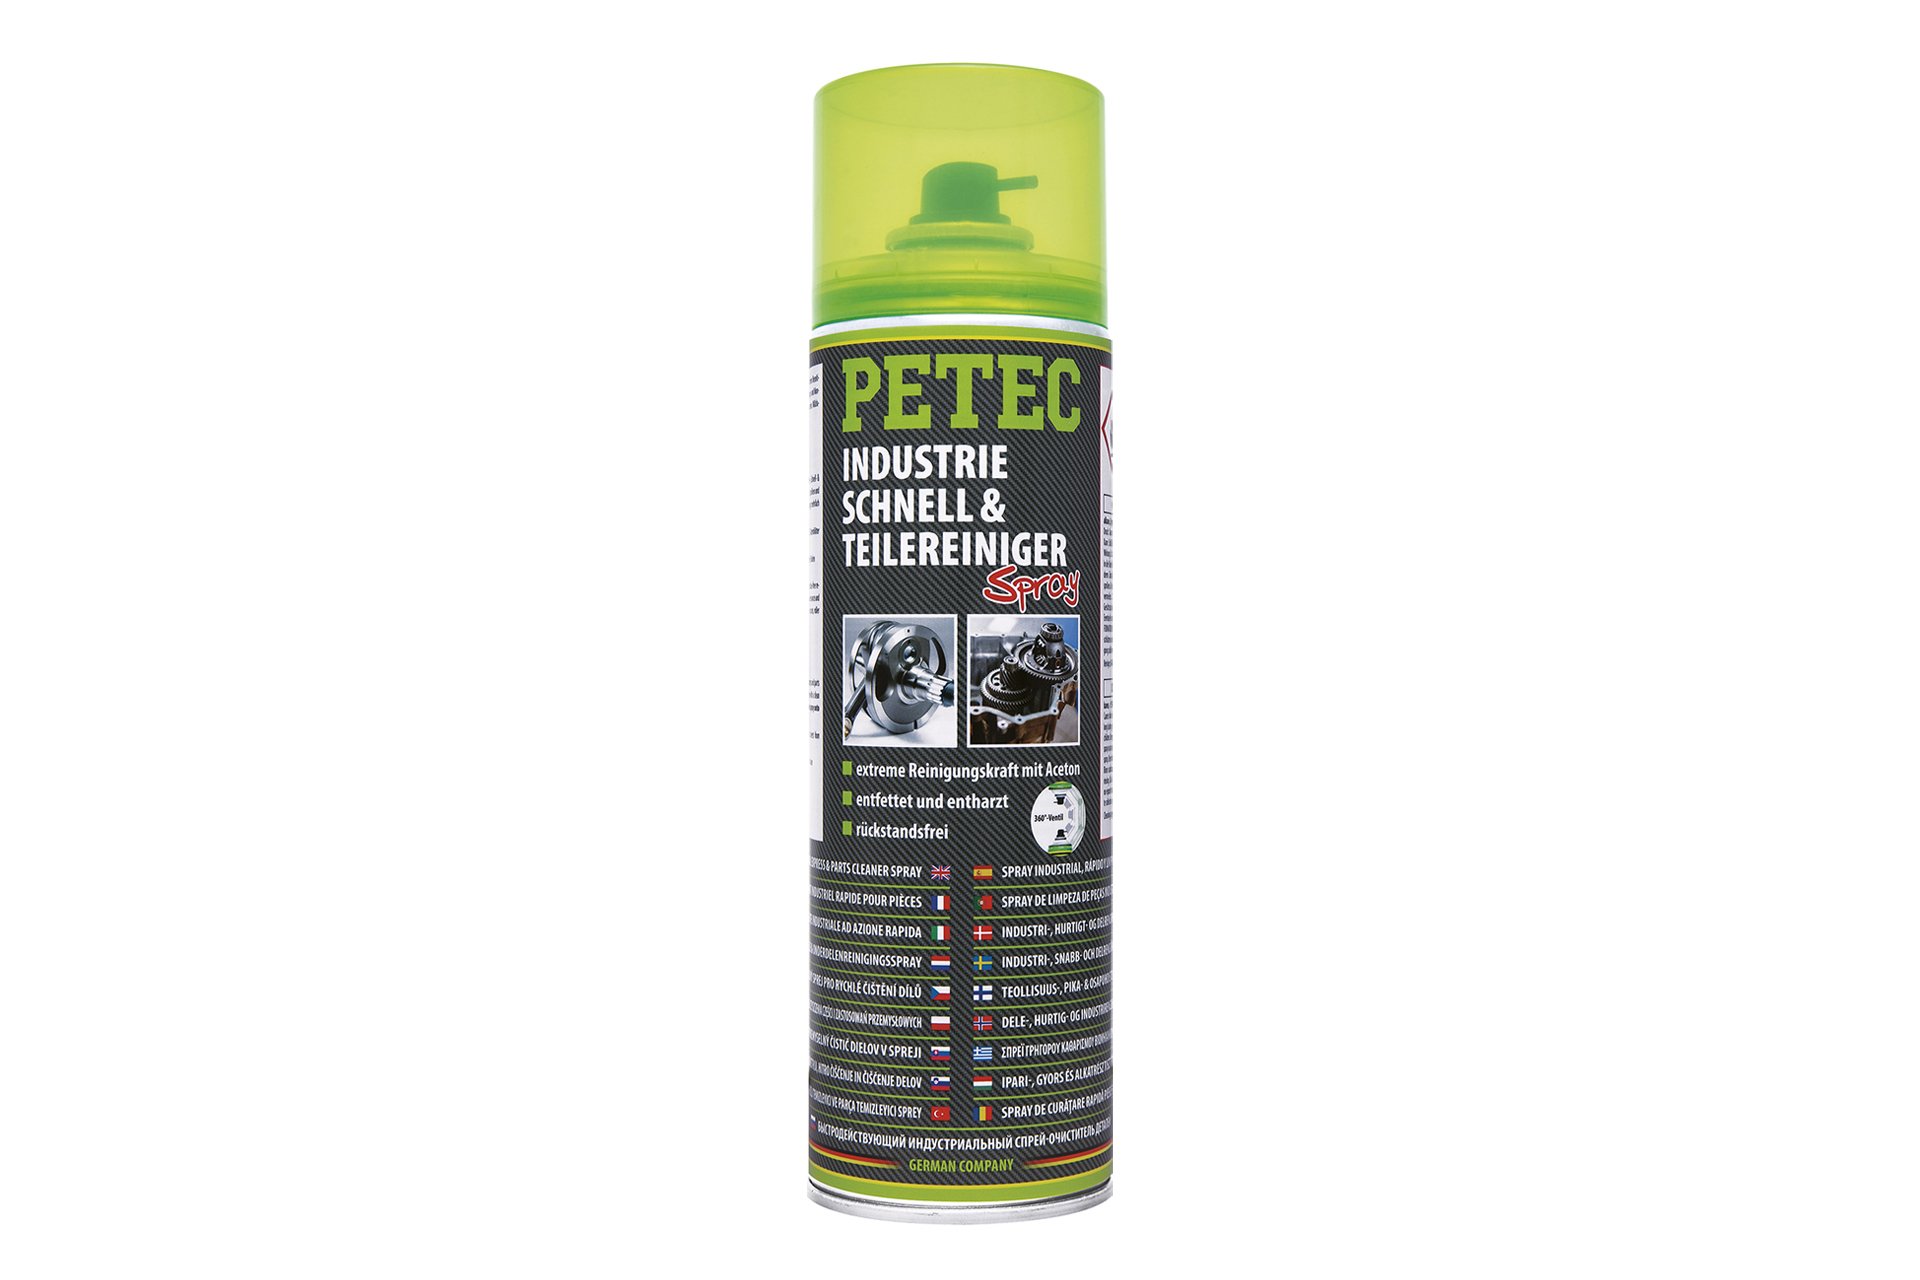 PETEC Industrie-, Schnell- & Teilereiniger-Spray, 500 ml